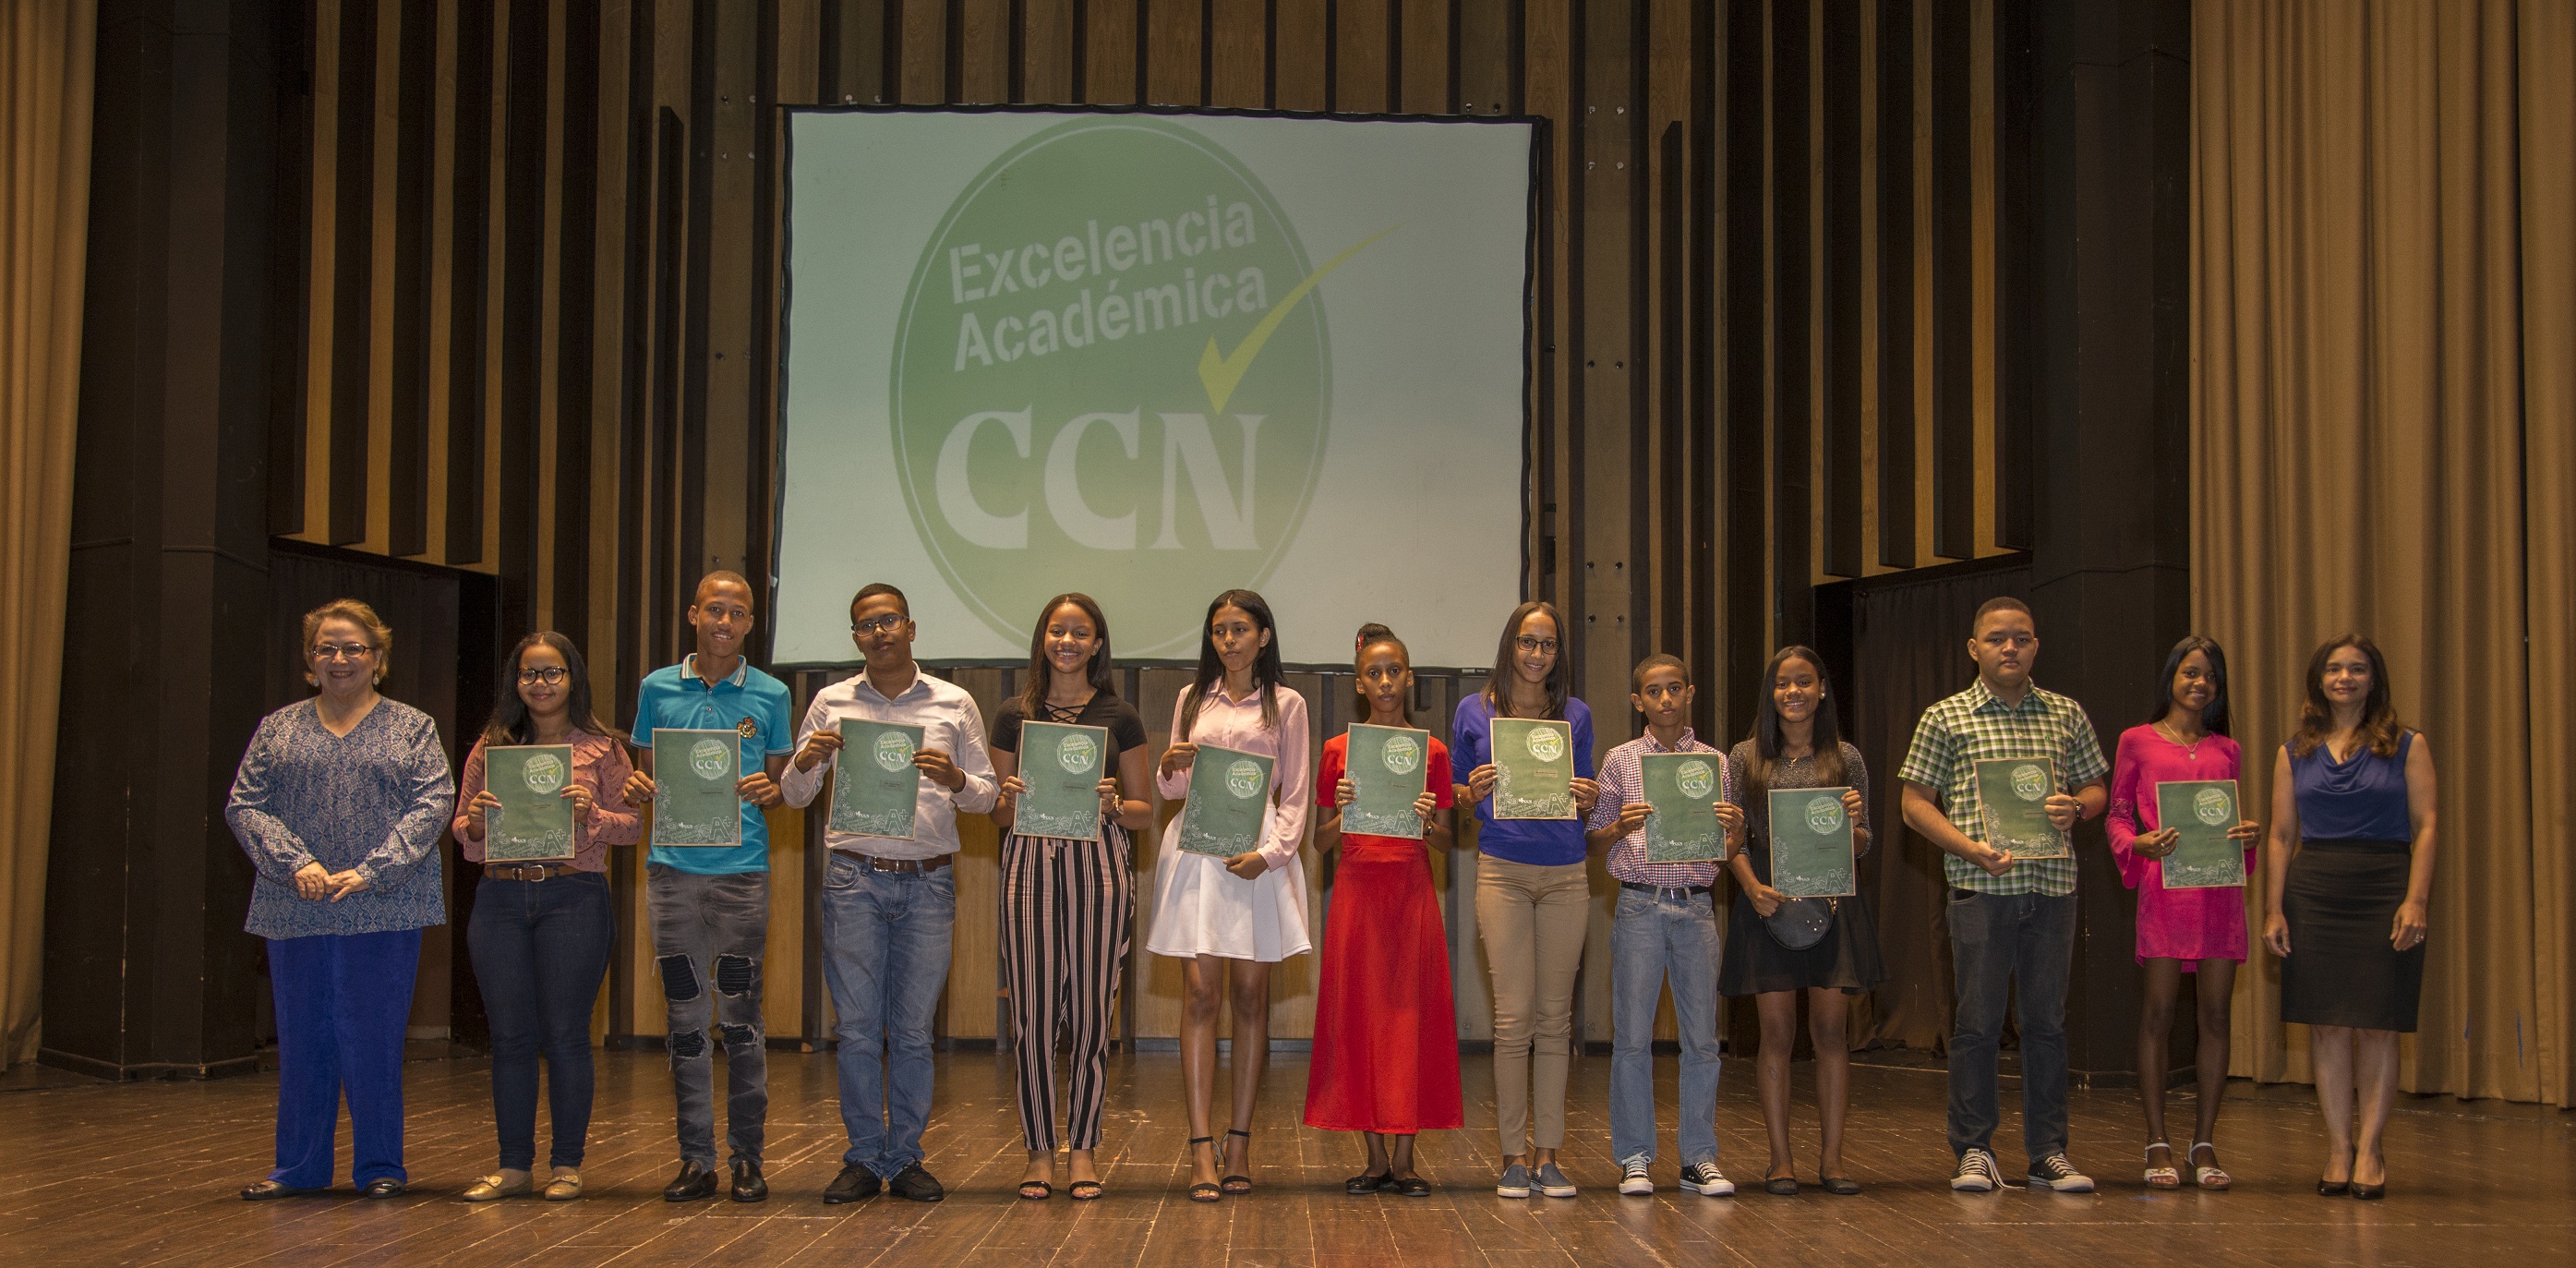 Centro Cuesta celebra la 16ta. Edición de la premiación Excelencia Académica